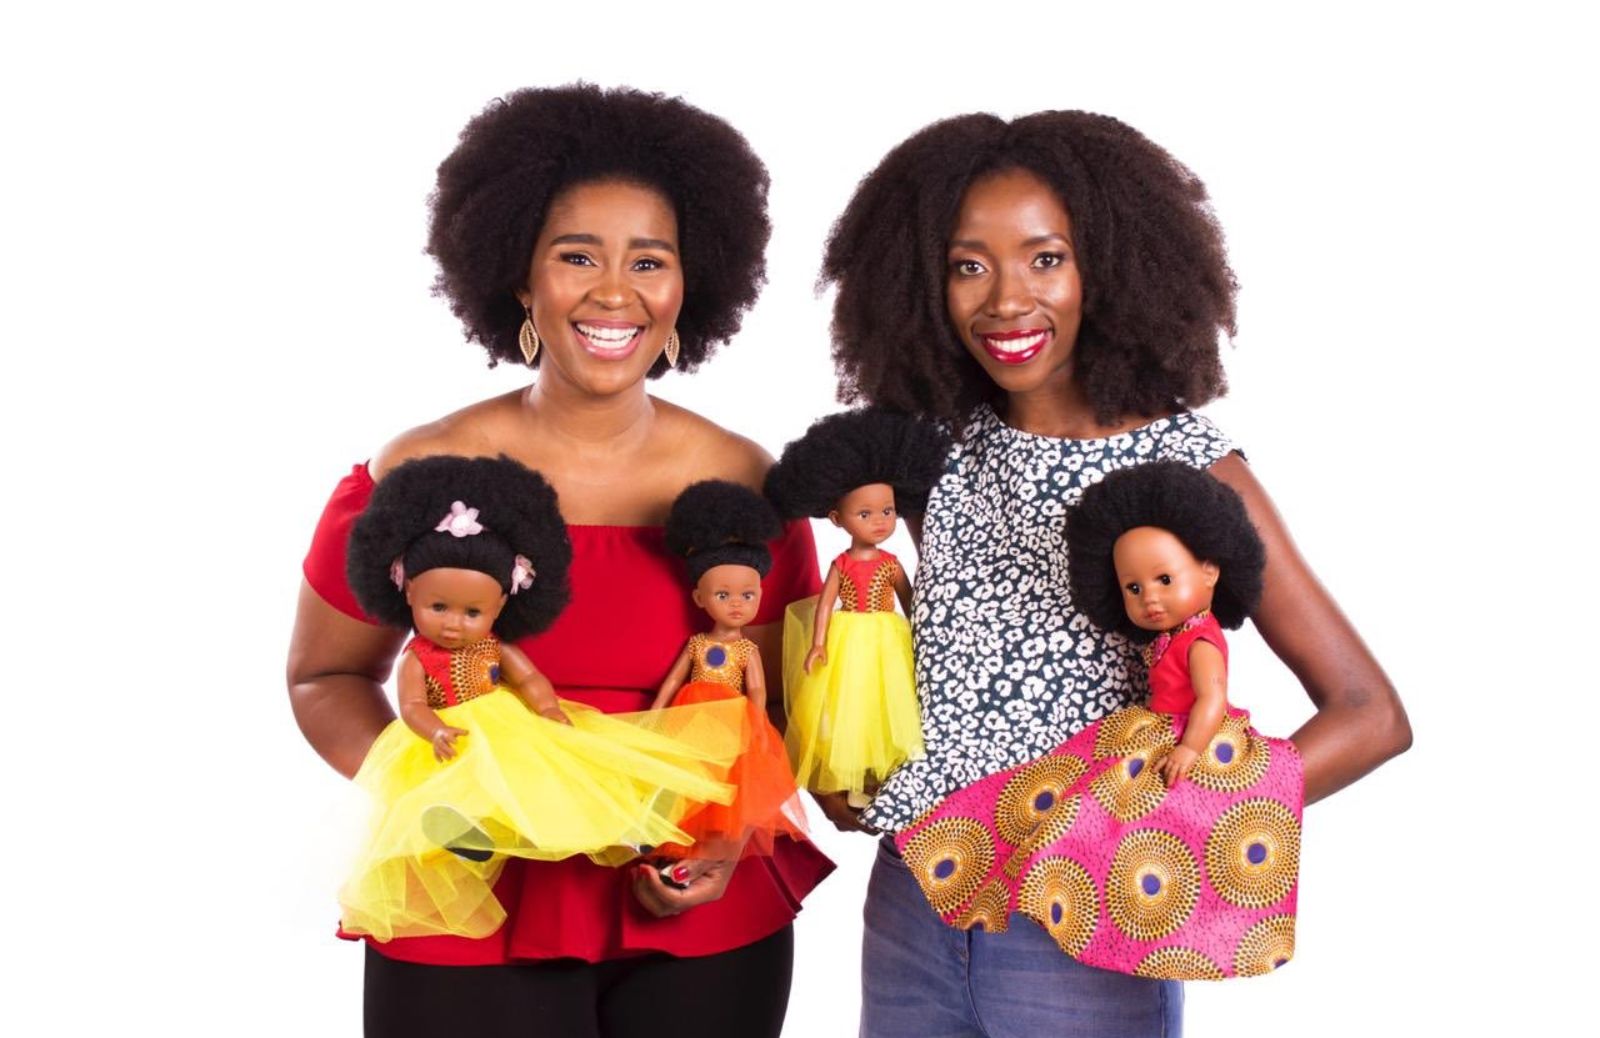 Bambole di colore per le bimbe africane: l'iniziativa di due donne designer